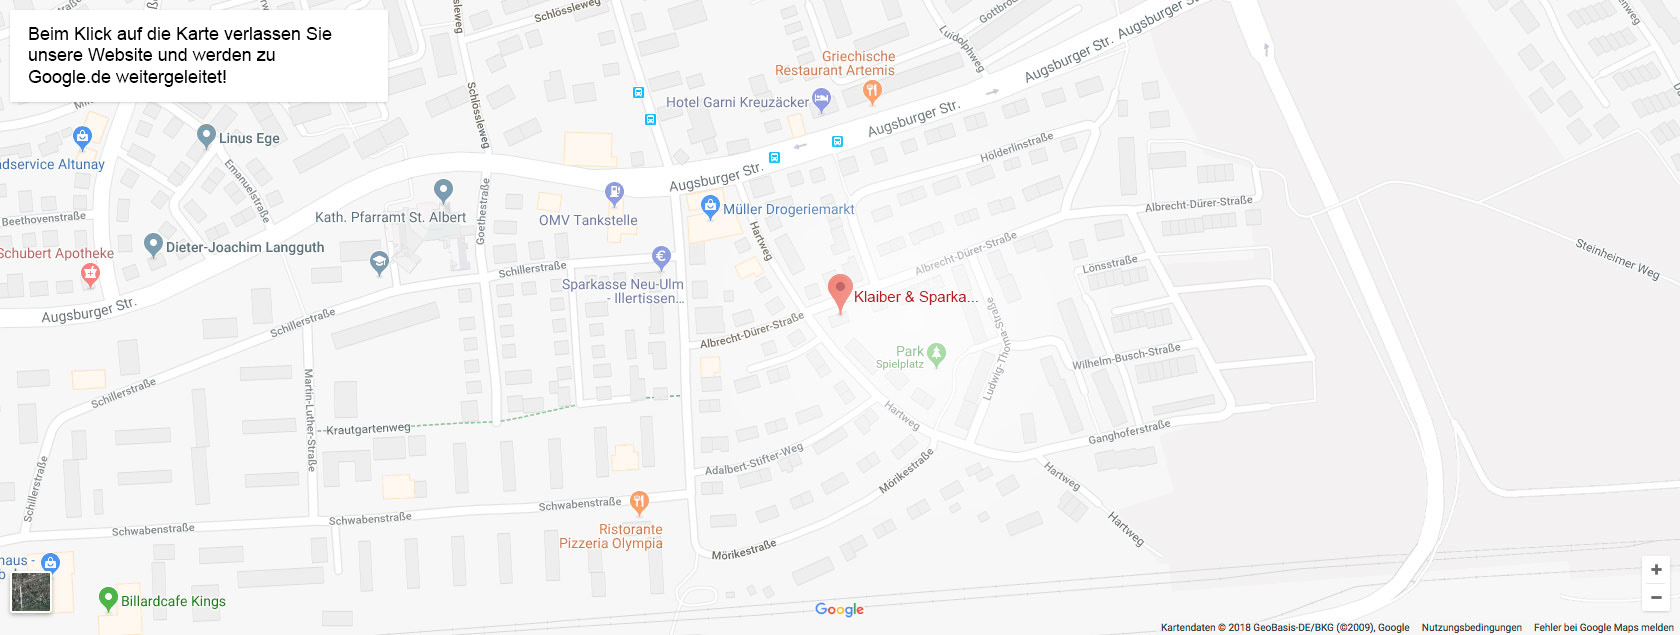 Sparka & Härtl – Google Maps